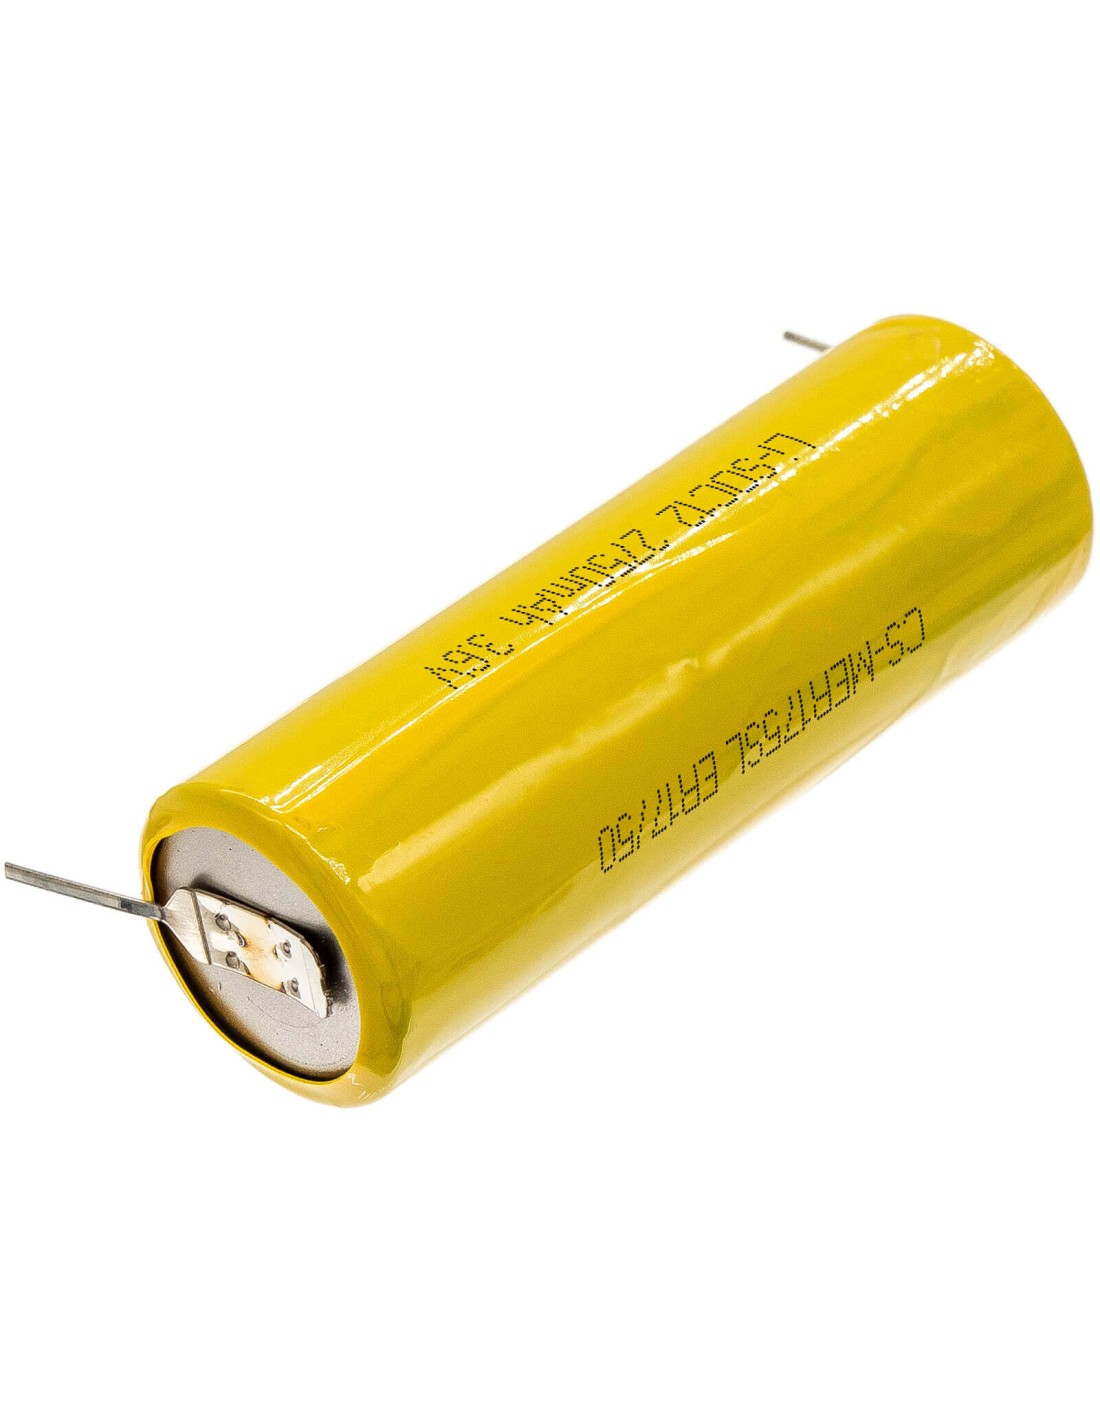 Battery for Maxell, Er17/50 3.6V, 2750mAh - 9.90Wh